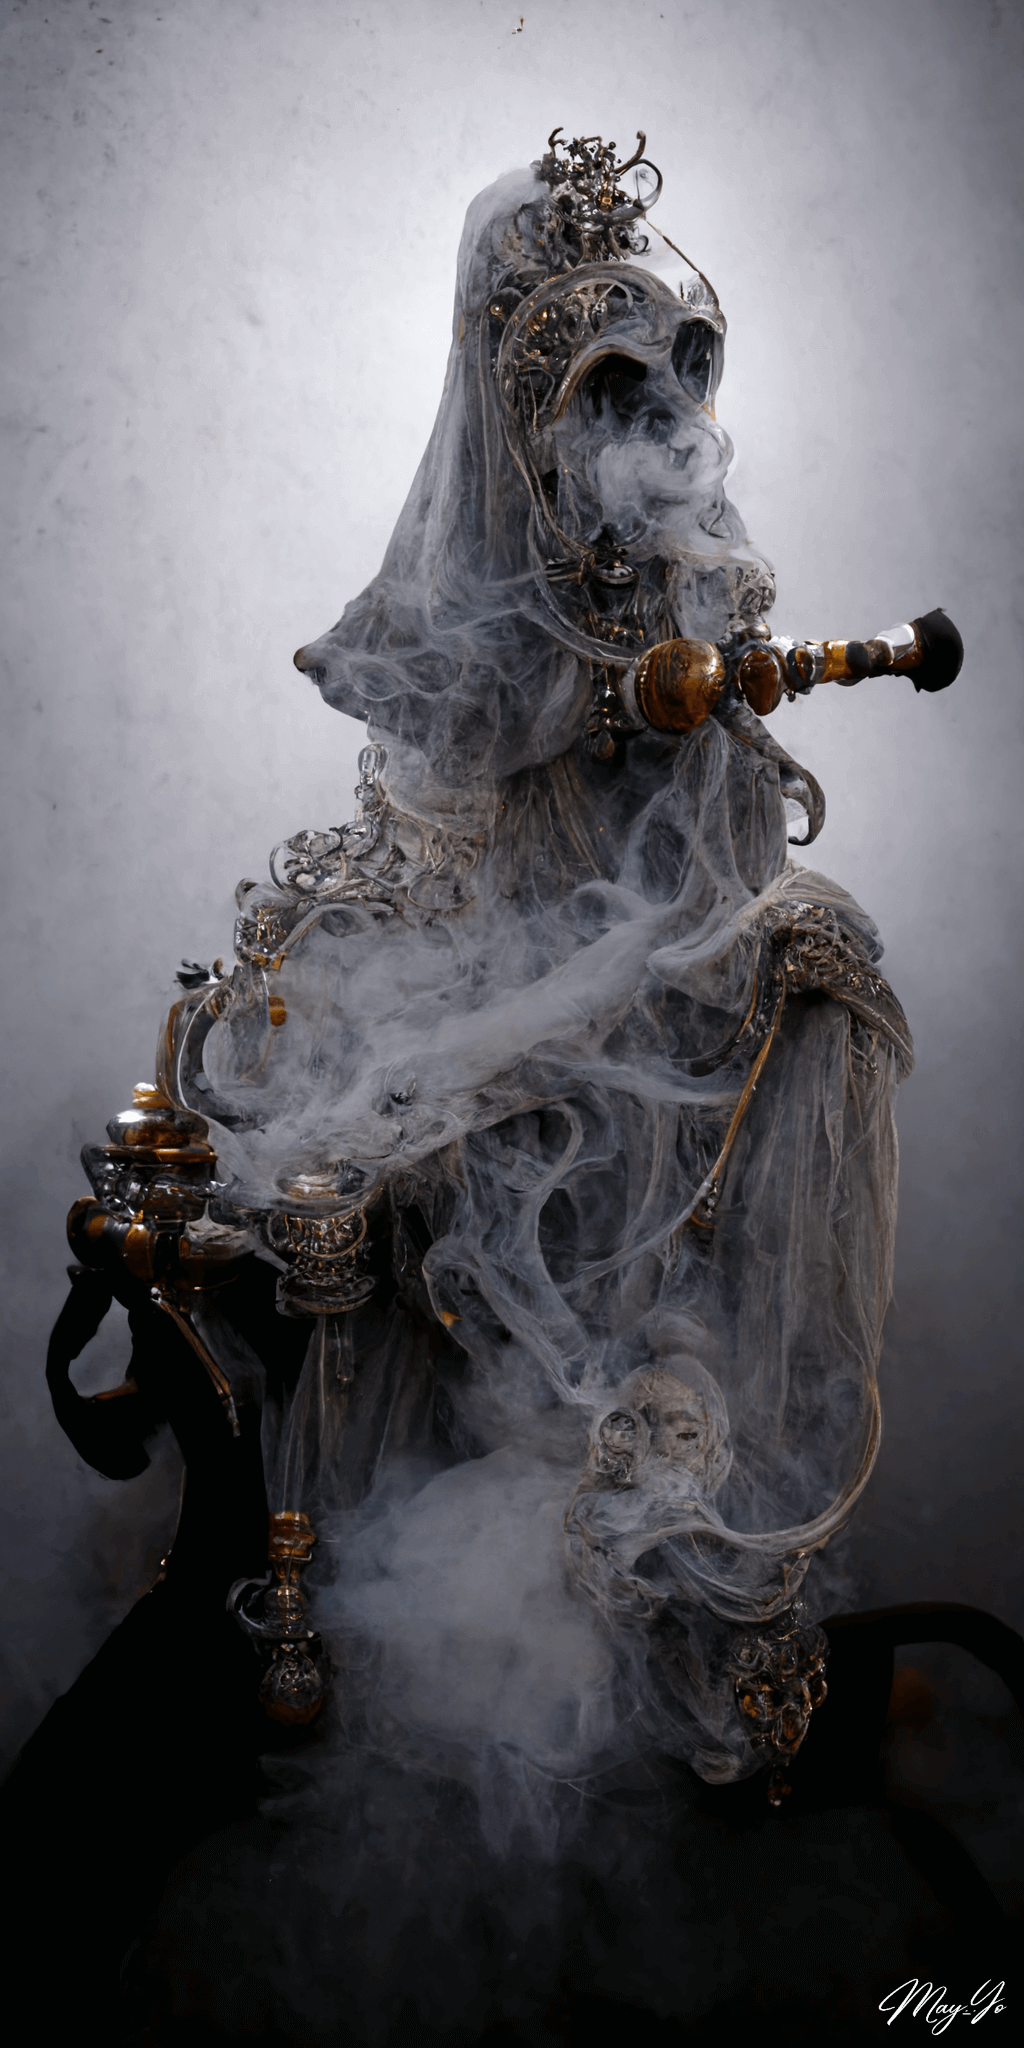 シーシャを吸うゴーストの壁紙イラスト 退廃的な貴婦人の死神の待受 AIイラスト待受 縦長画像 shisha ghost illustration fiction art